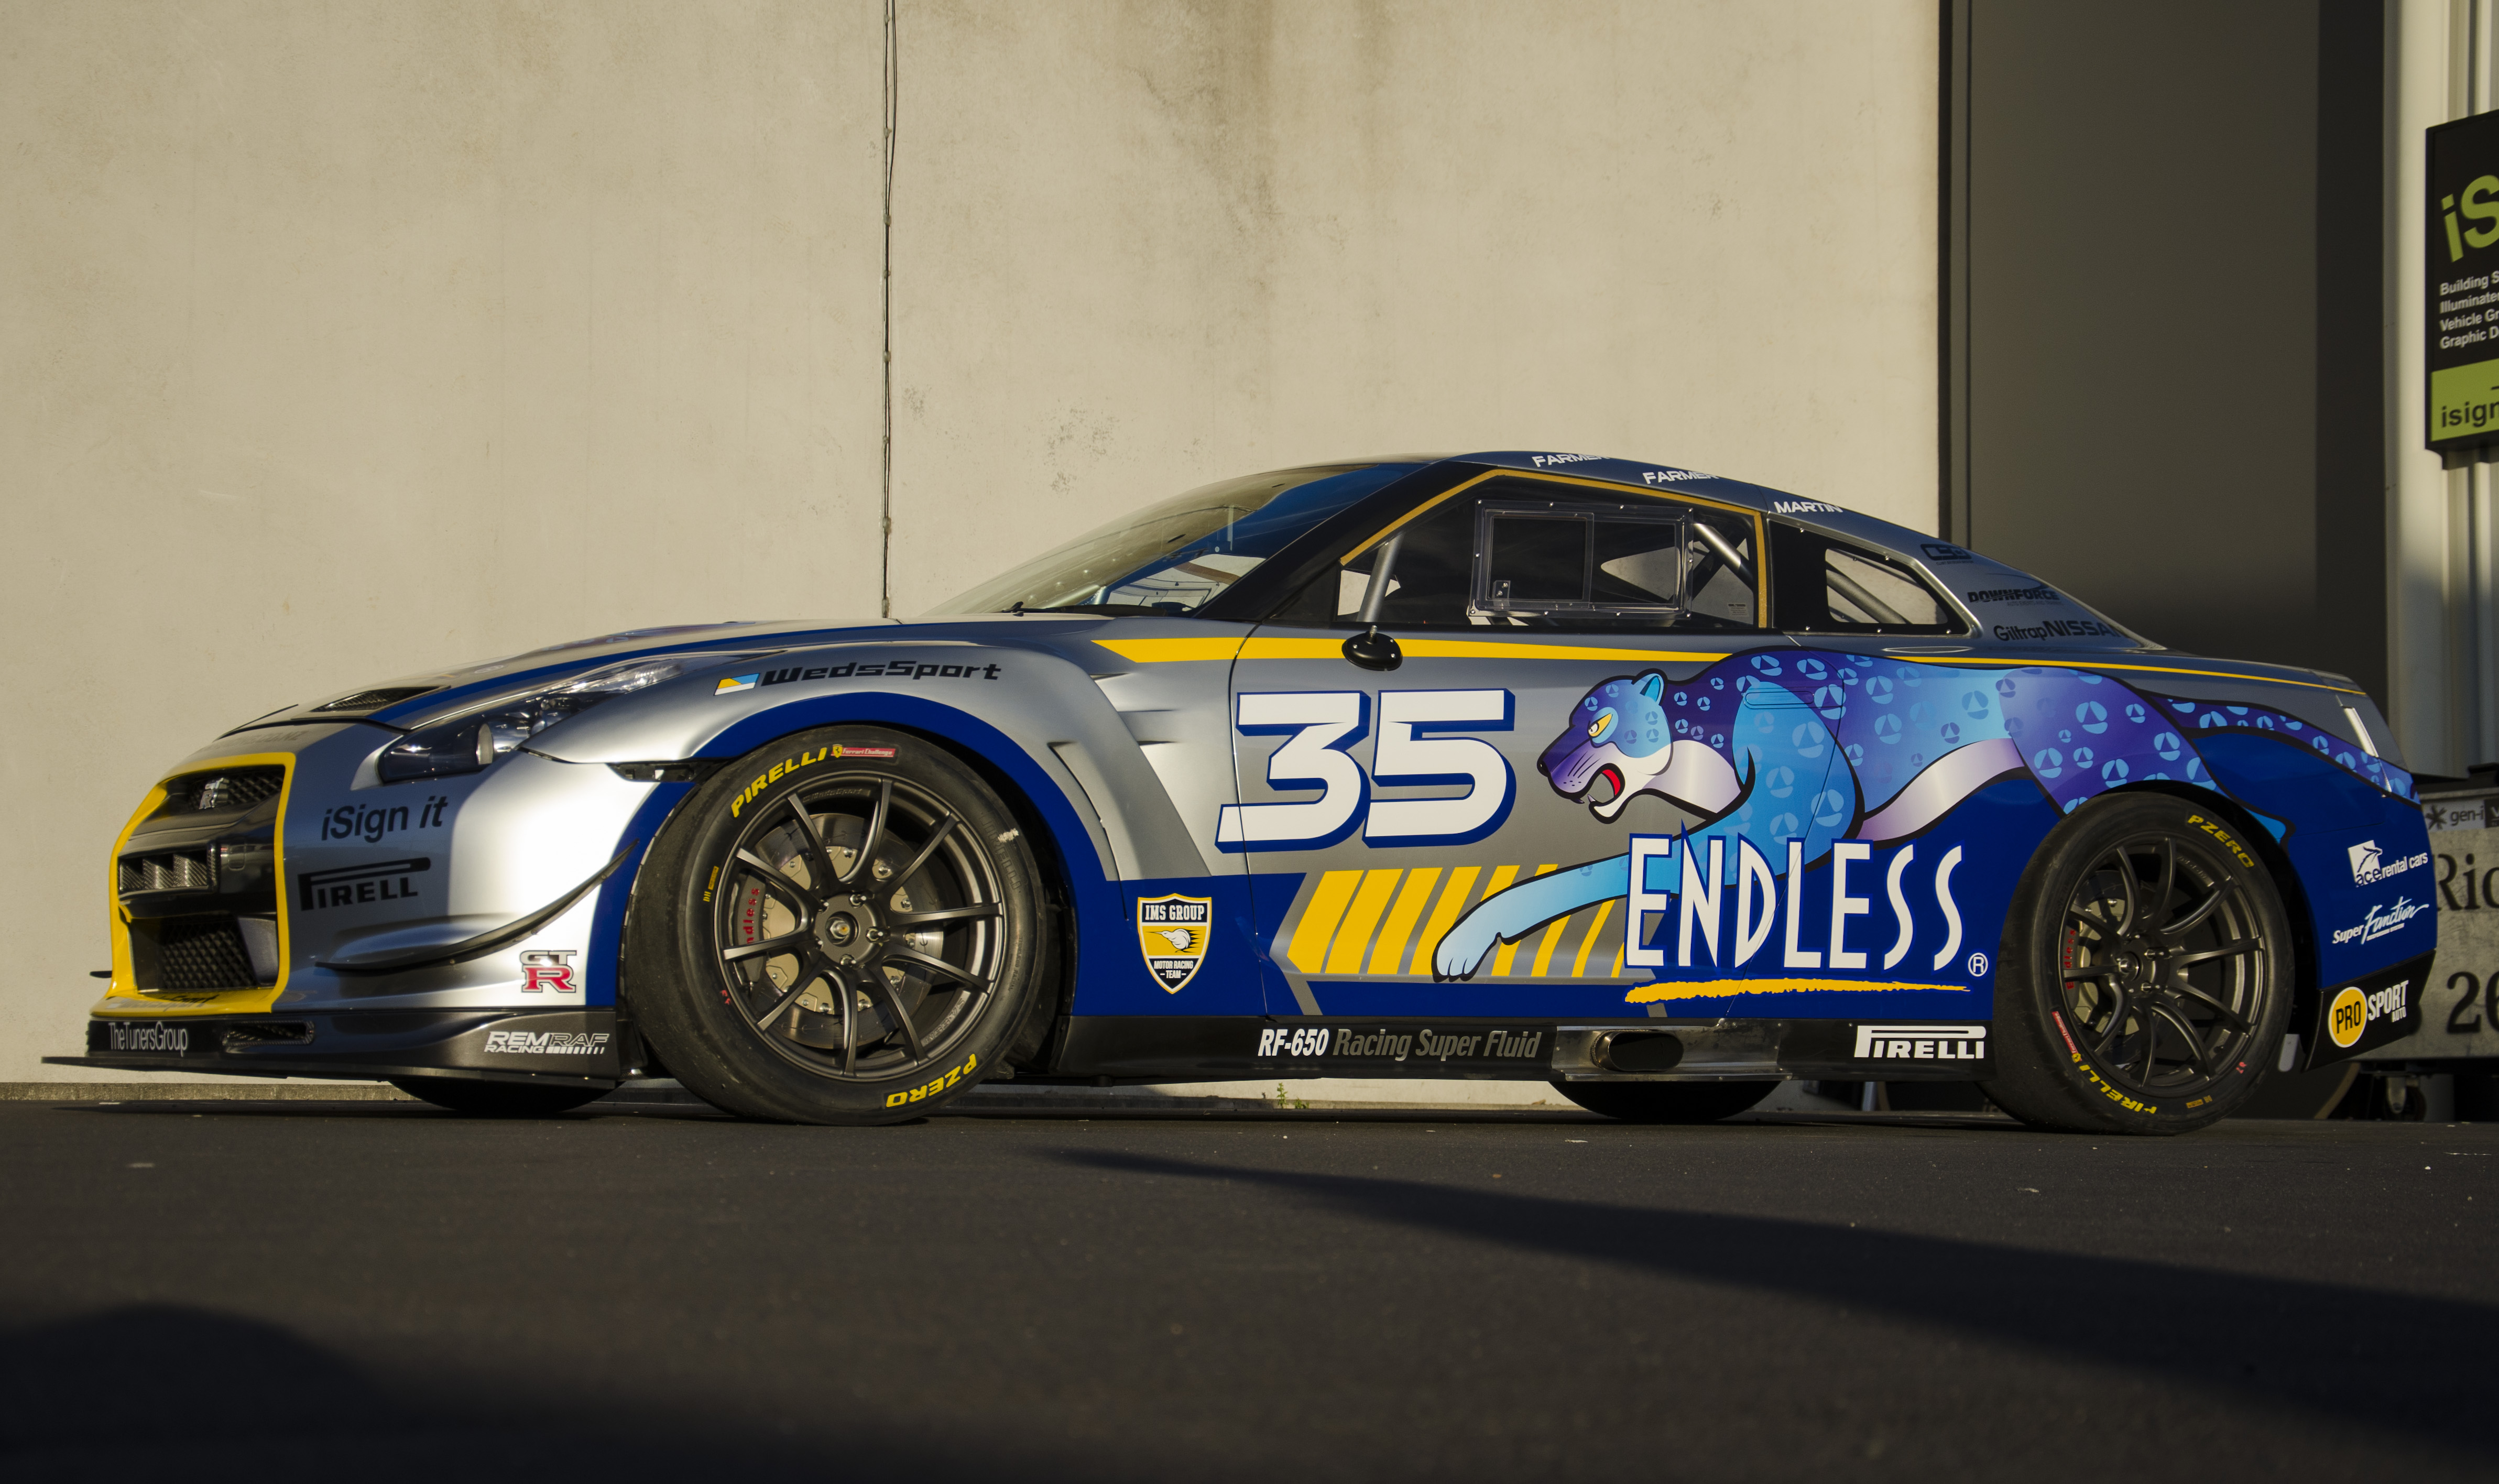 International Motorsport/ENDLESS Endurance GT-R revealed